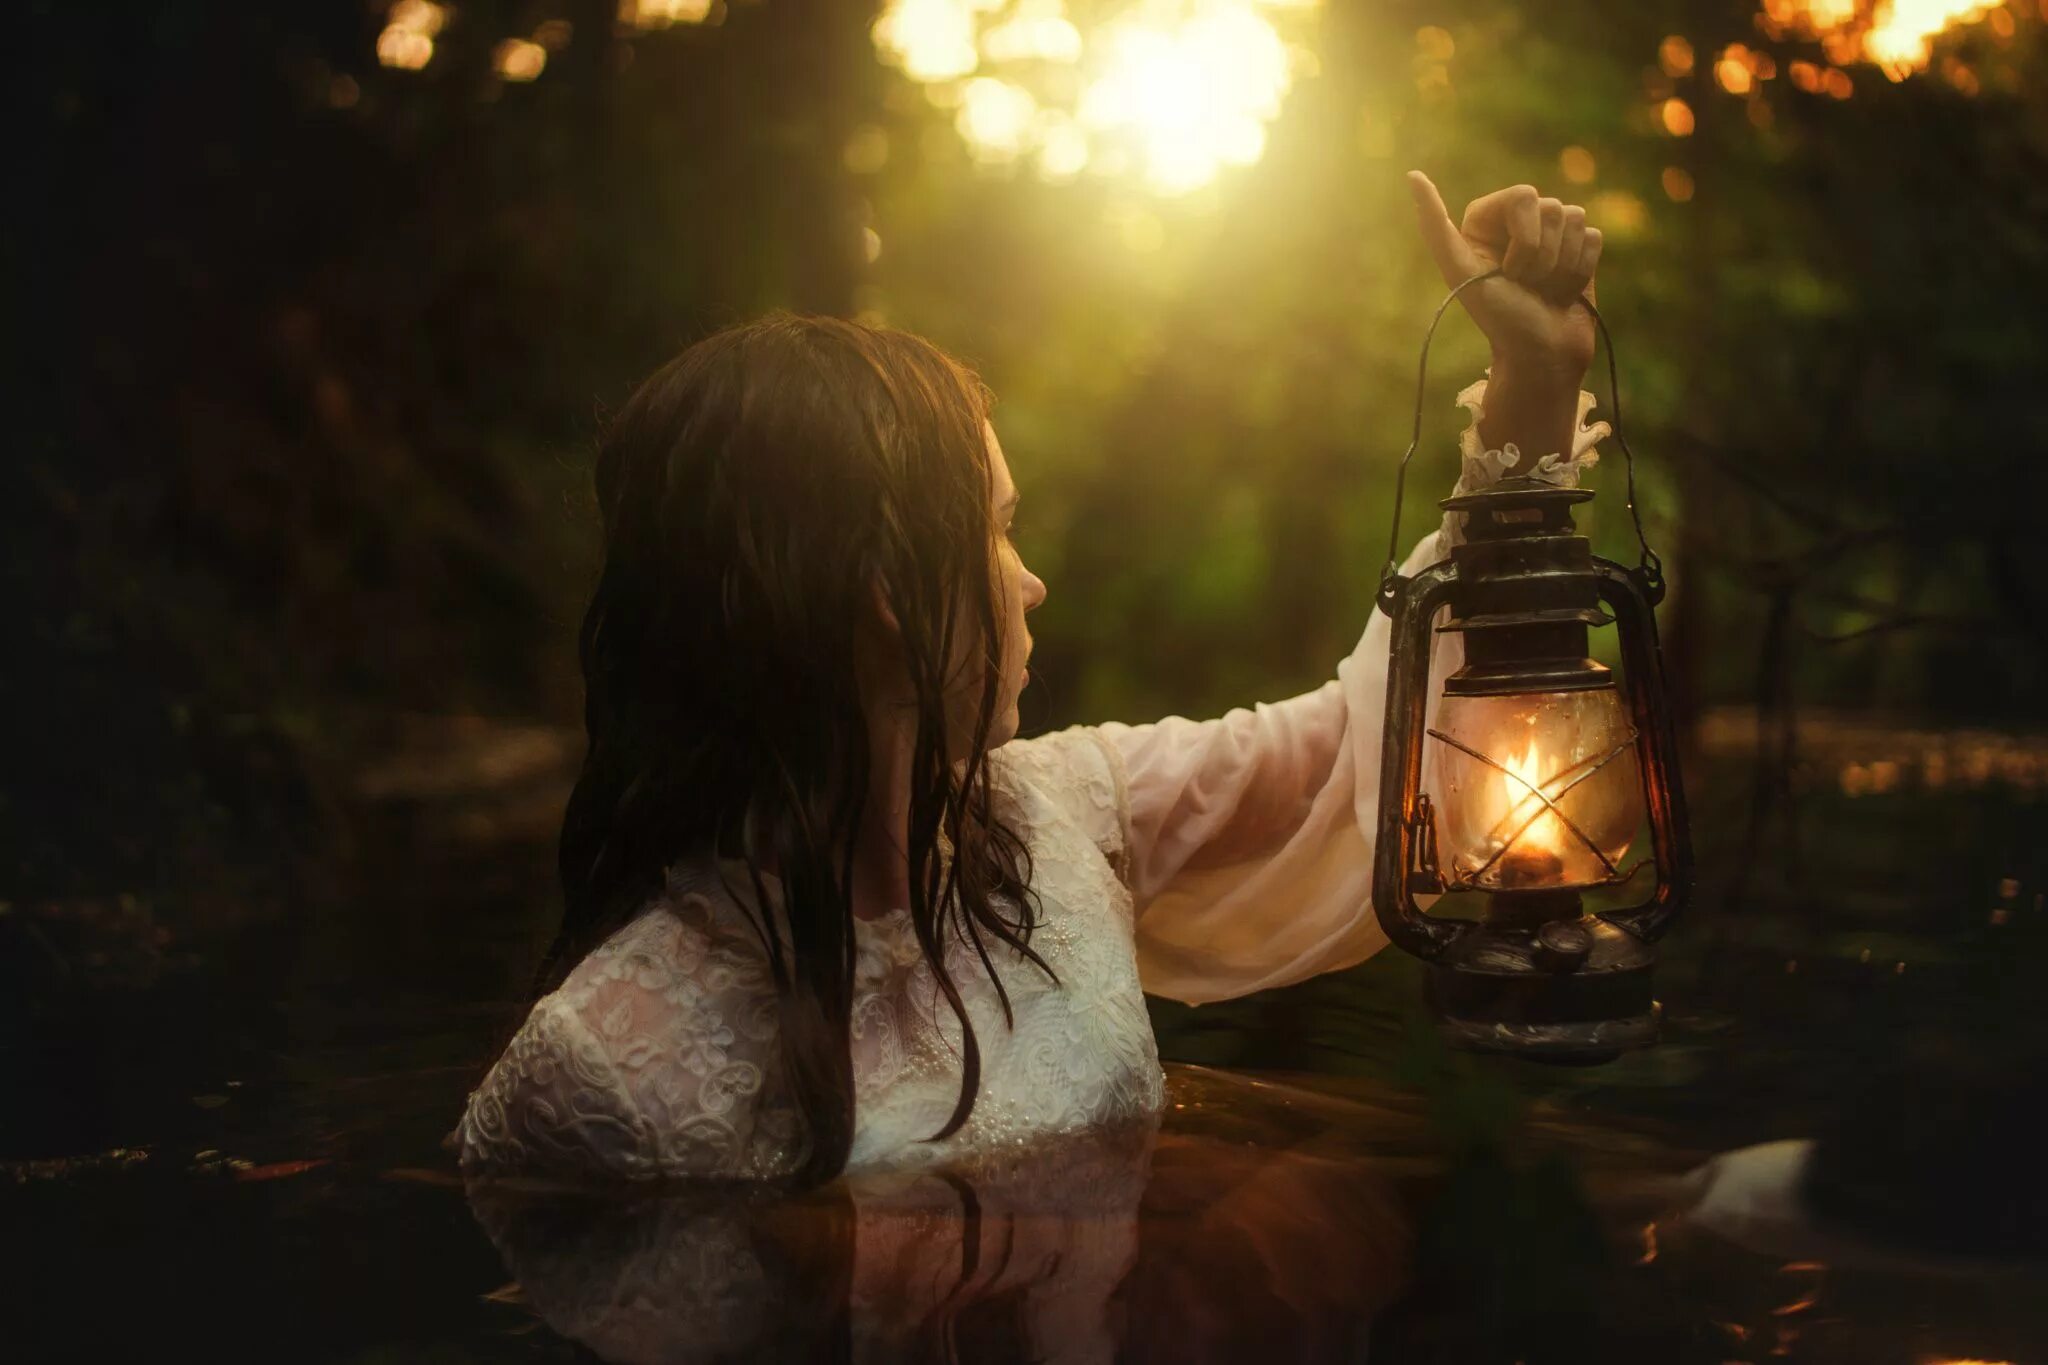 Поздно вечером девушка. Девушка с фонарем в руке. Девушка с фонарем в лесу. Девушка с керосиновой лампой. Девушка с фонариком в лесу.